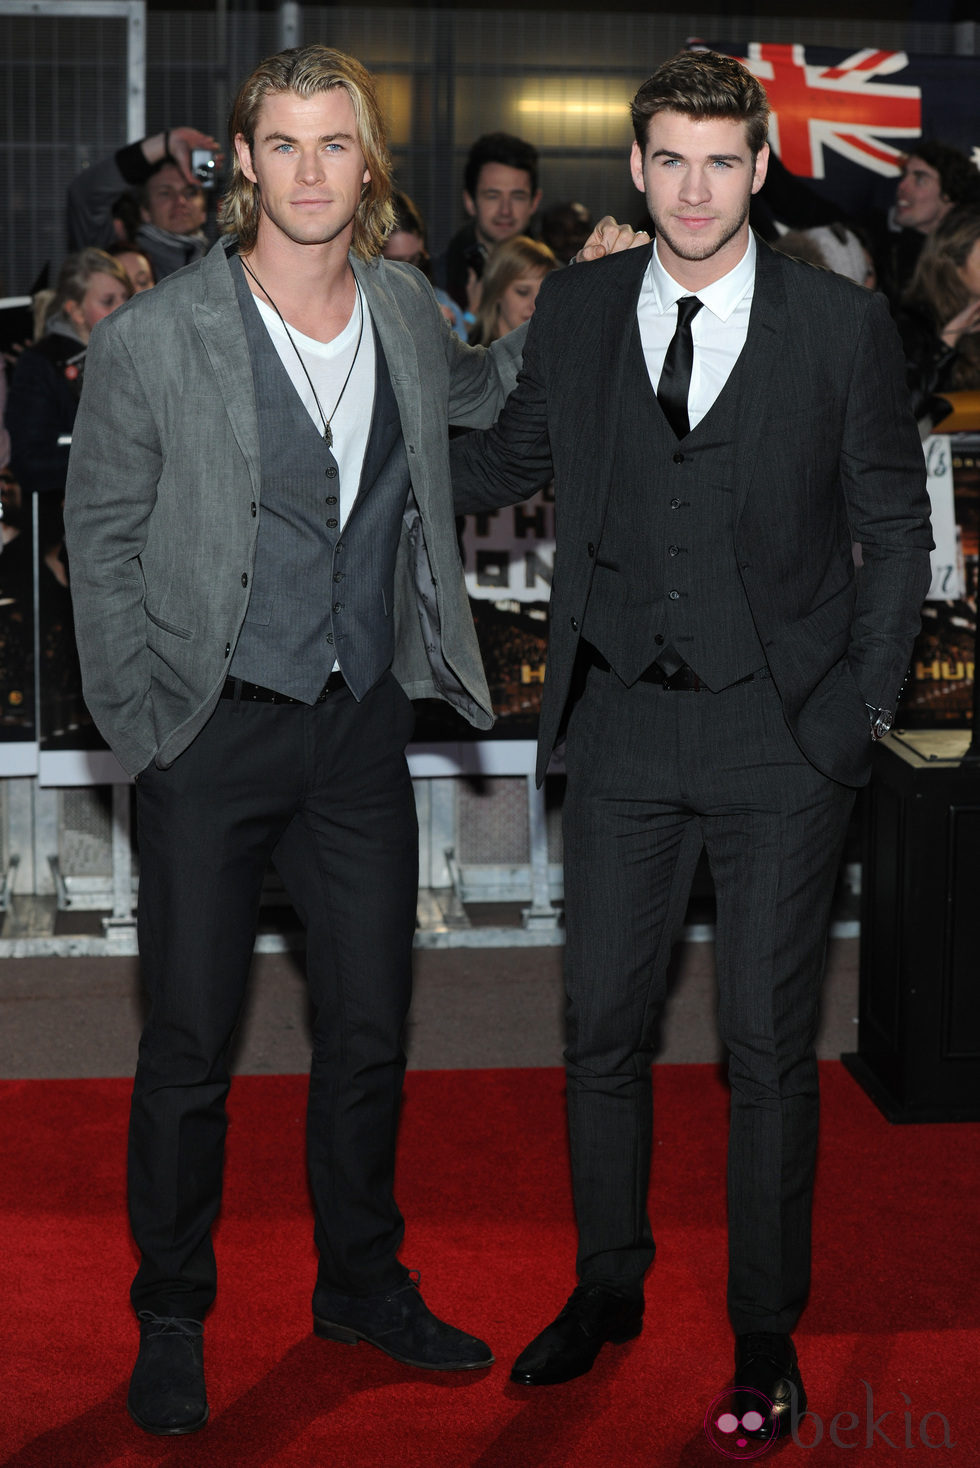 Los hermanos Chris y Liam Hemsworth en el estreno de 'Los juegos del hambre' en Londres